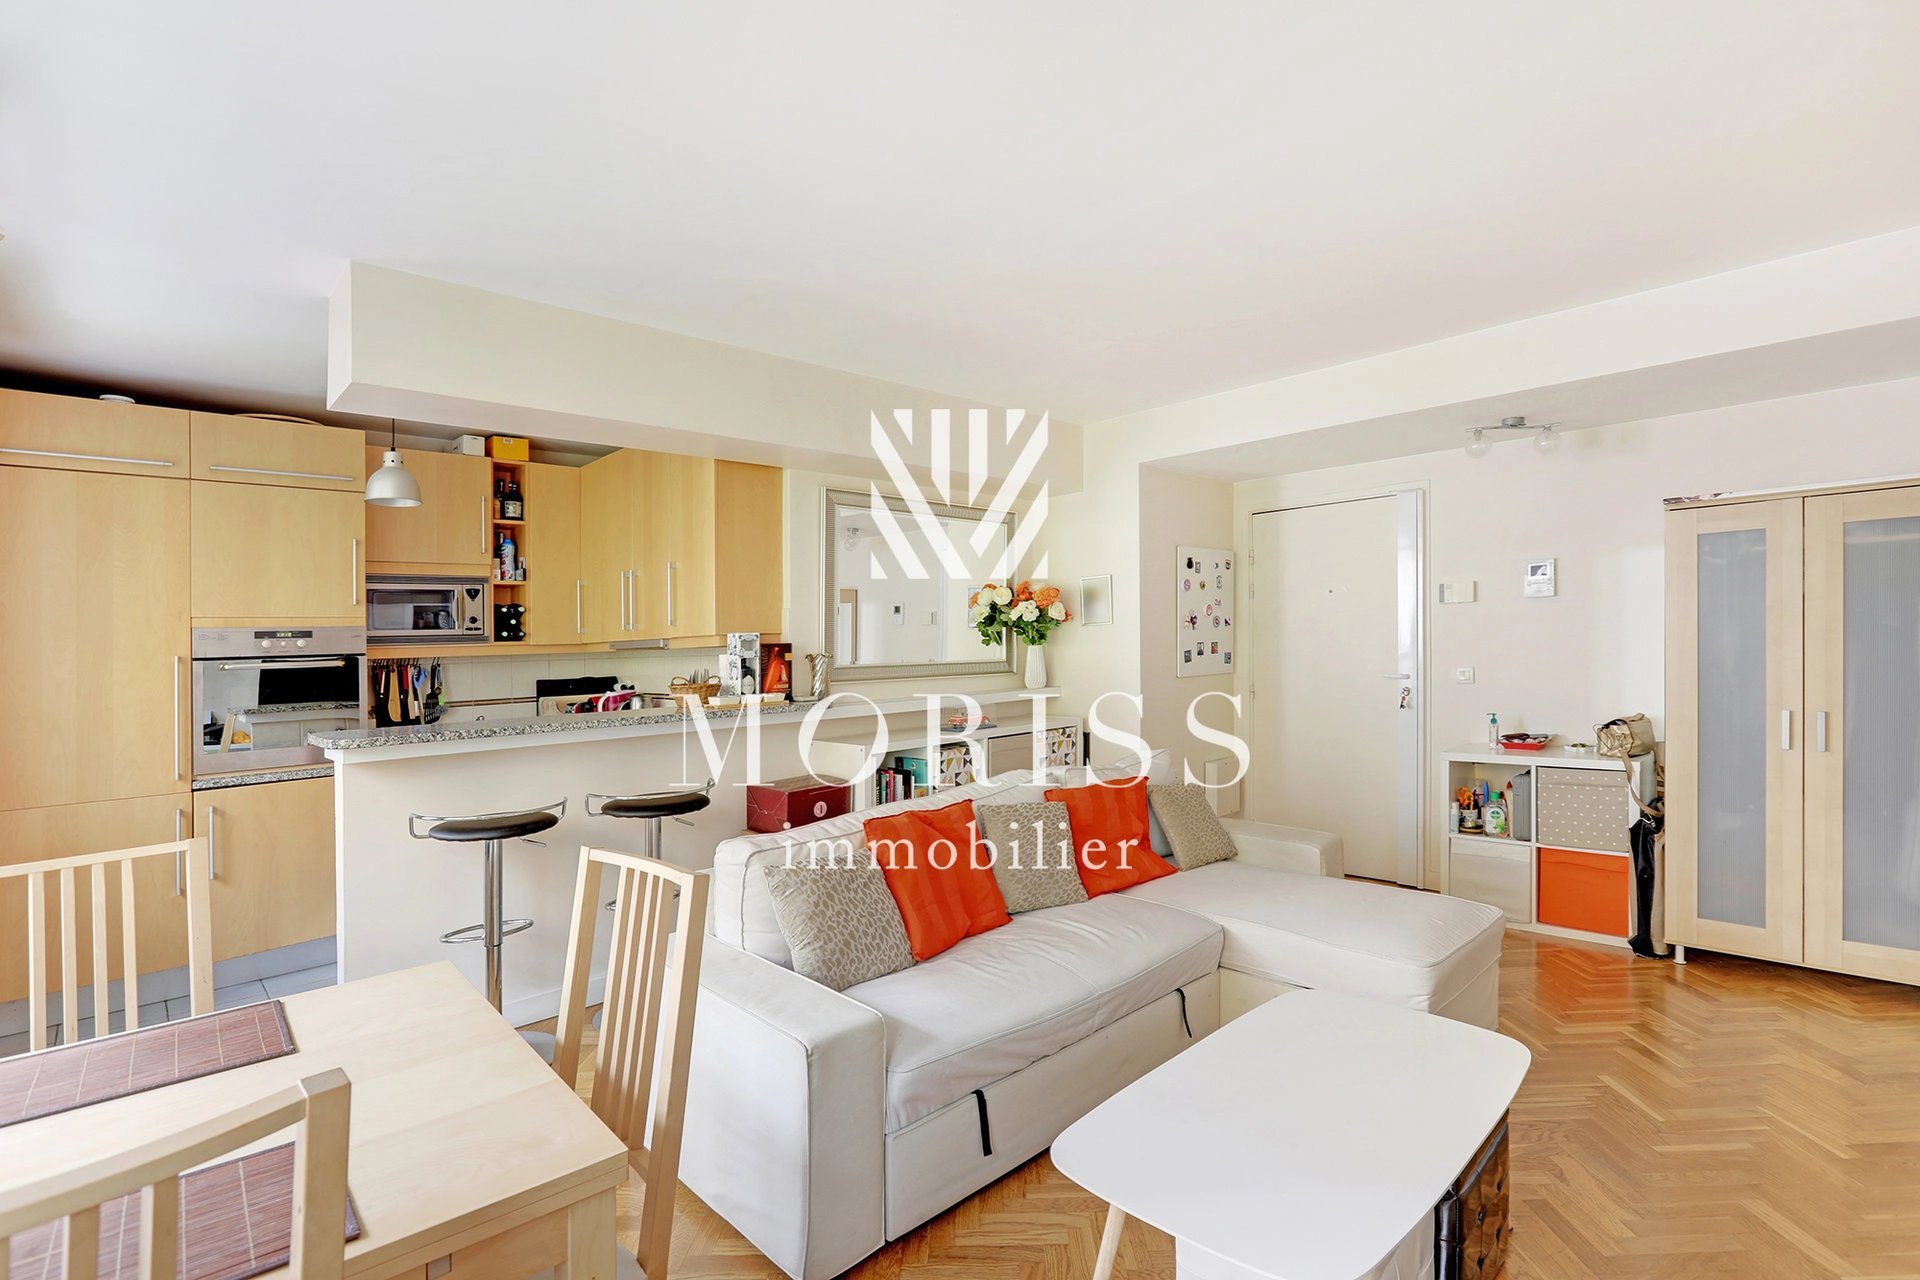 92300 Levallois - Appartement 2 pièces 45m2 - - Image Array